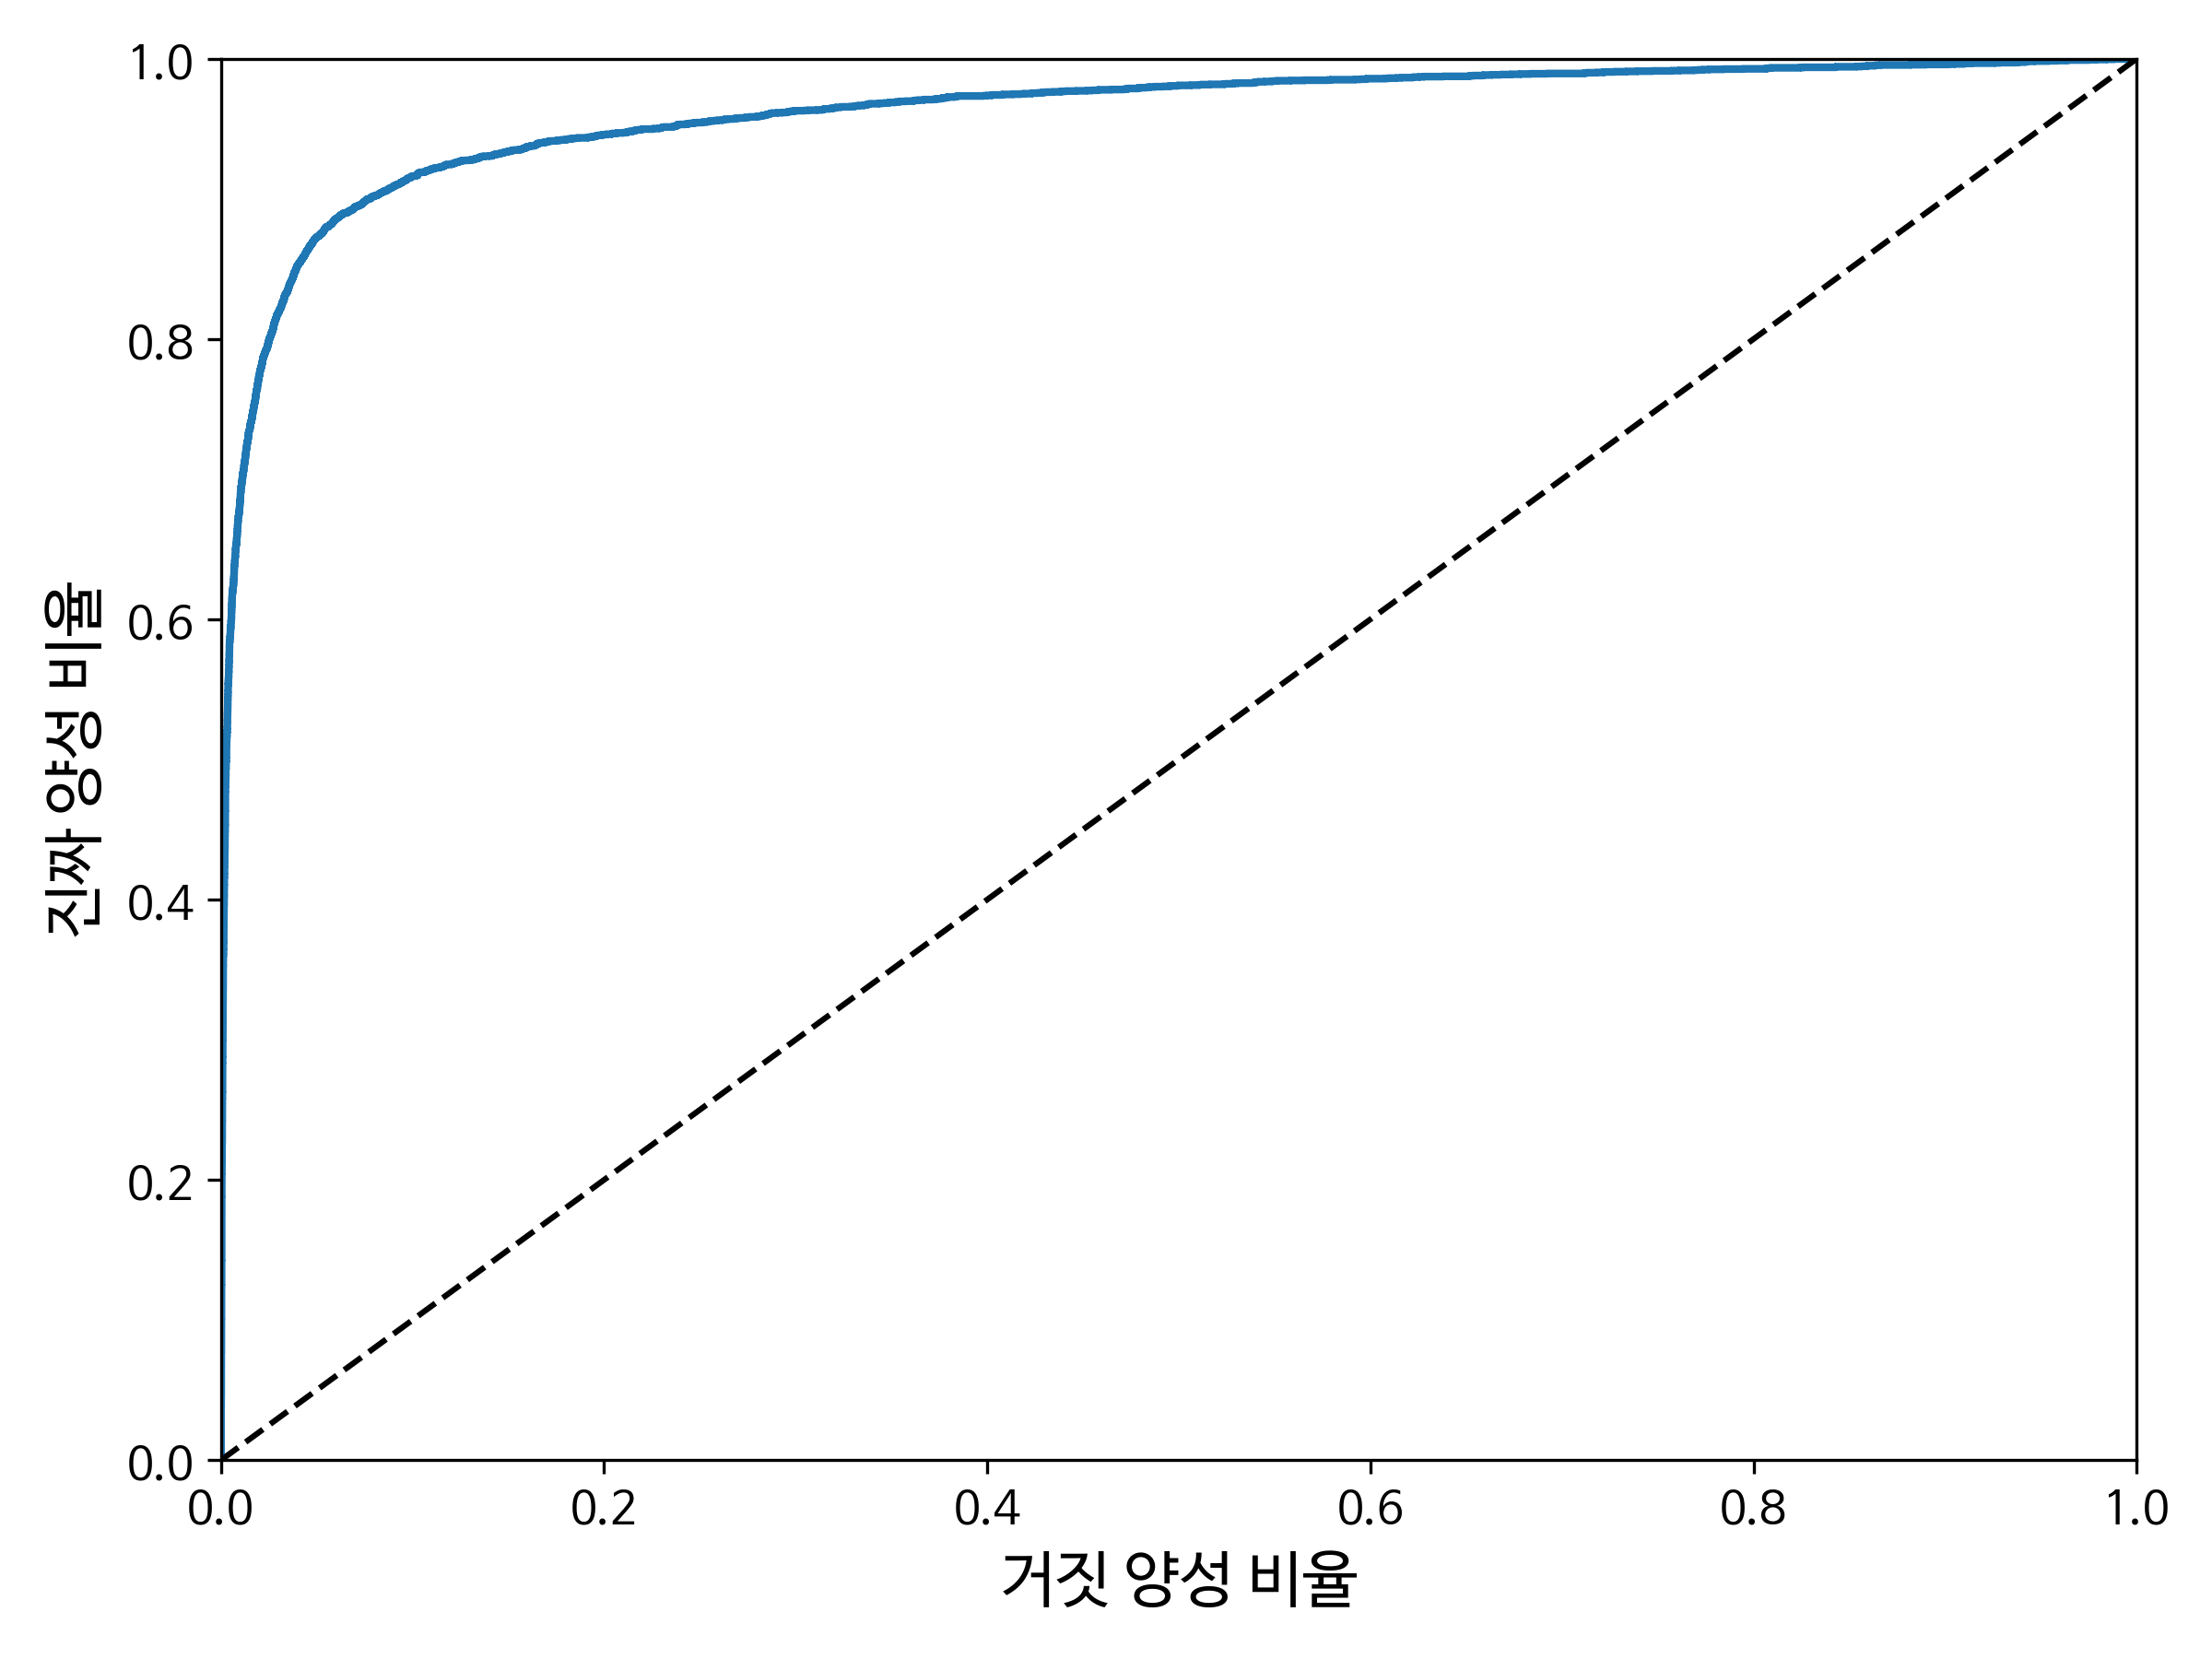 roc_curve_plot.png